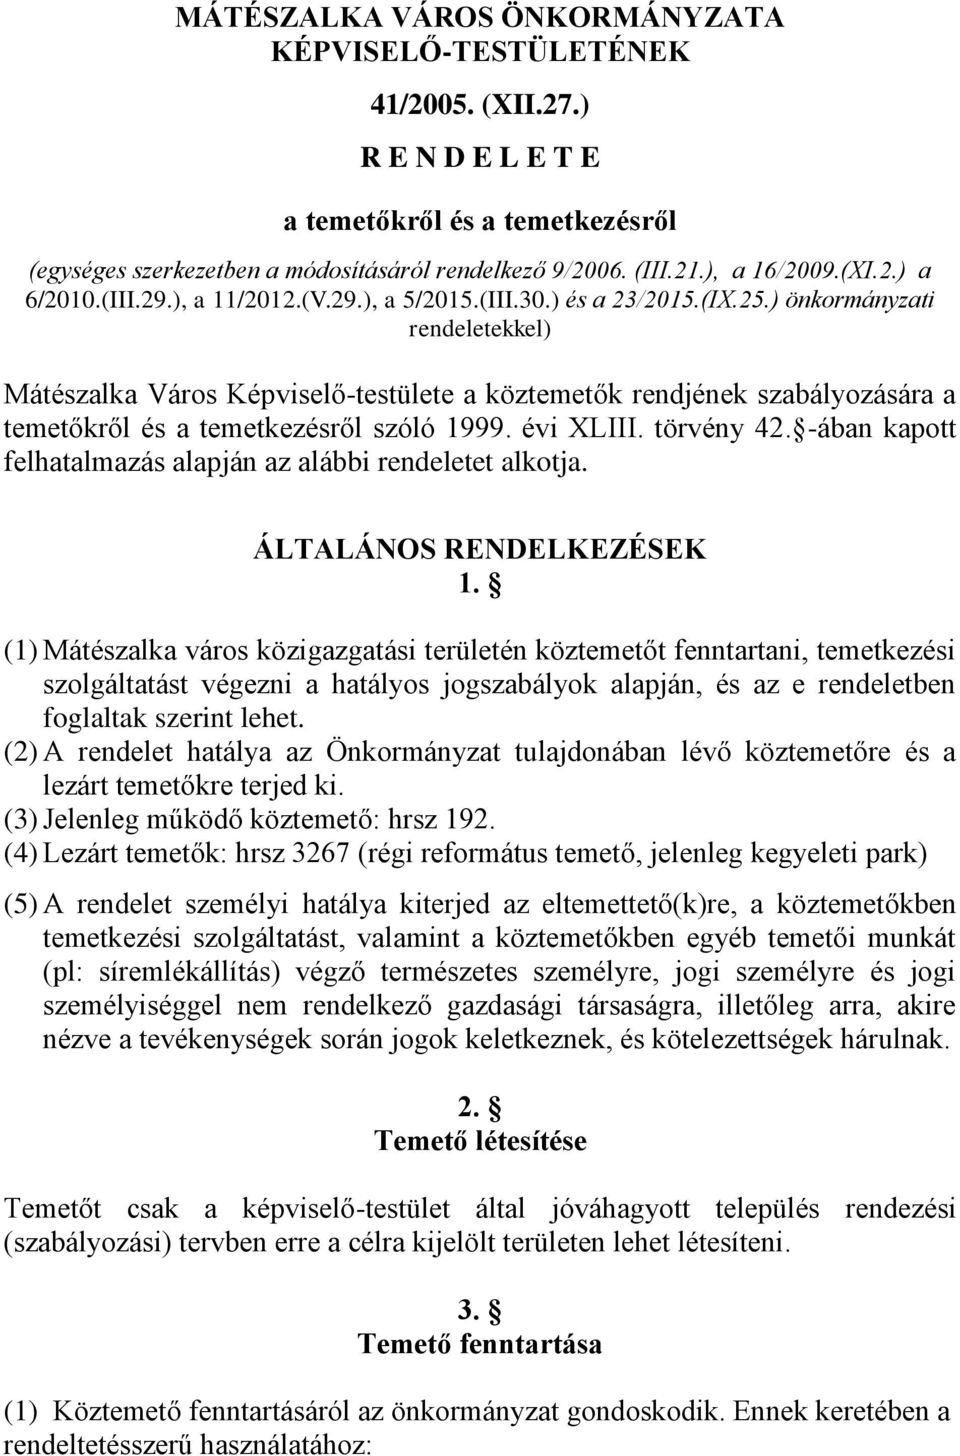 ) önkormányzati rendeletekkel) Mátészalka Város Képviselő-testülete a köztemetők rendjének szabályozására a temetőkről és a temetkezésről szóló 1999. évi XLIII. törvény 42.